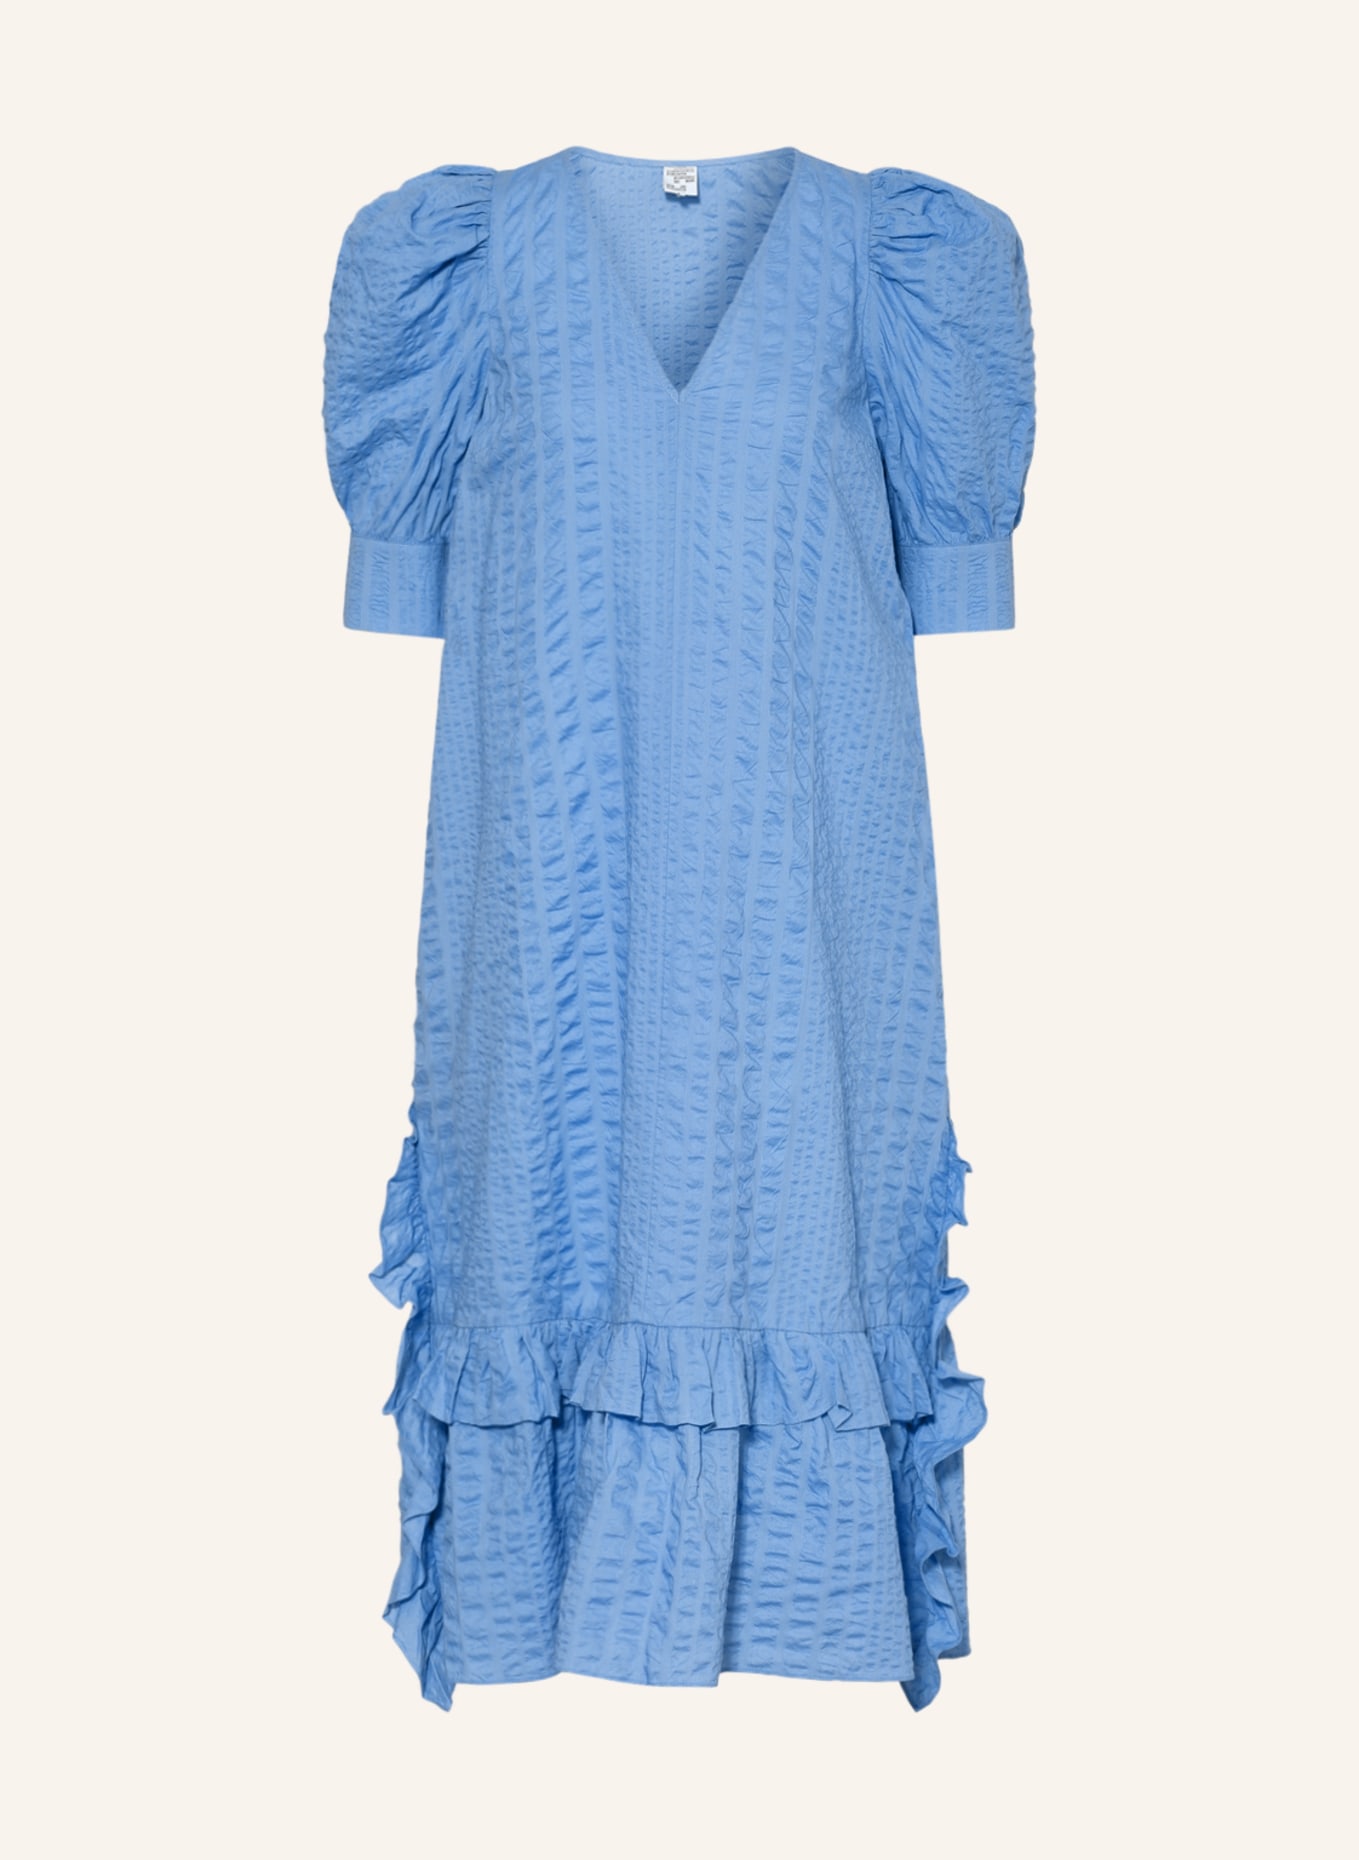 BAUM UND PFERDGARTEN Kleid AILANI mit Volants, Farbe: BLAU (Bild 1)